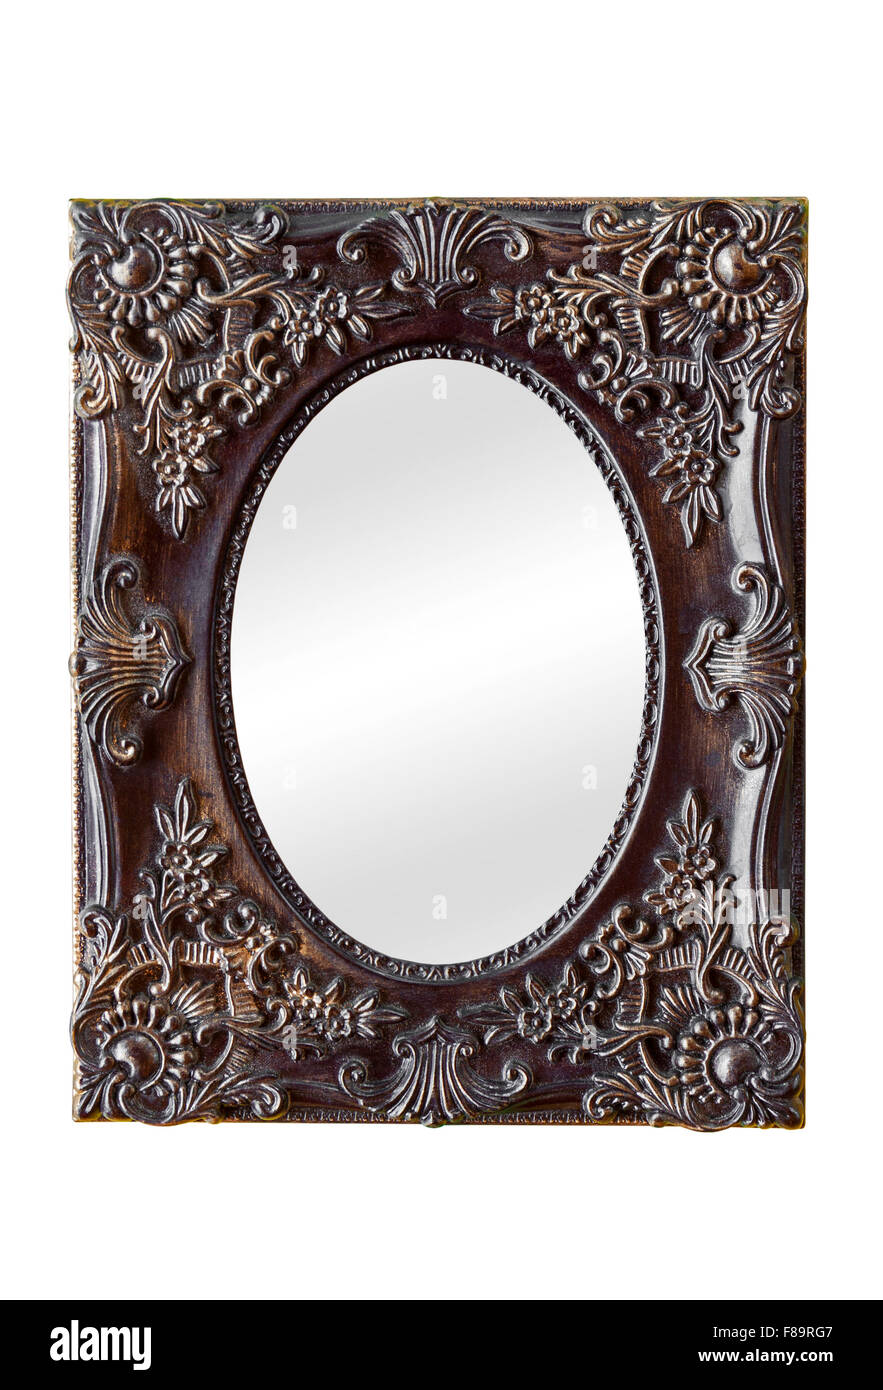 Estilo clásico antiguo espejo con marco decorado vintage aislado sobre fondo blanco. Foto de stock